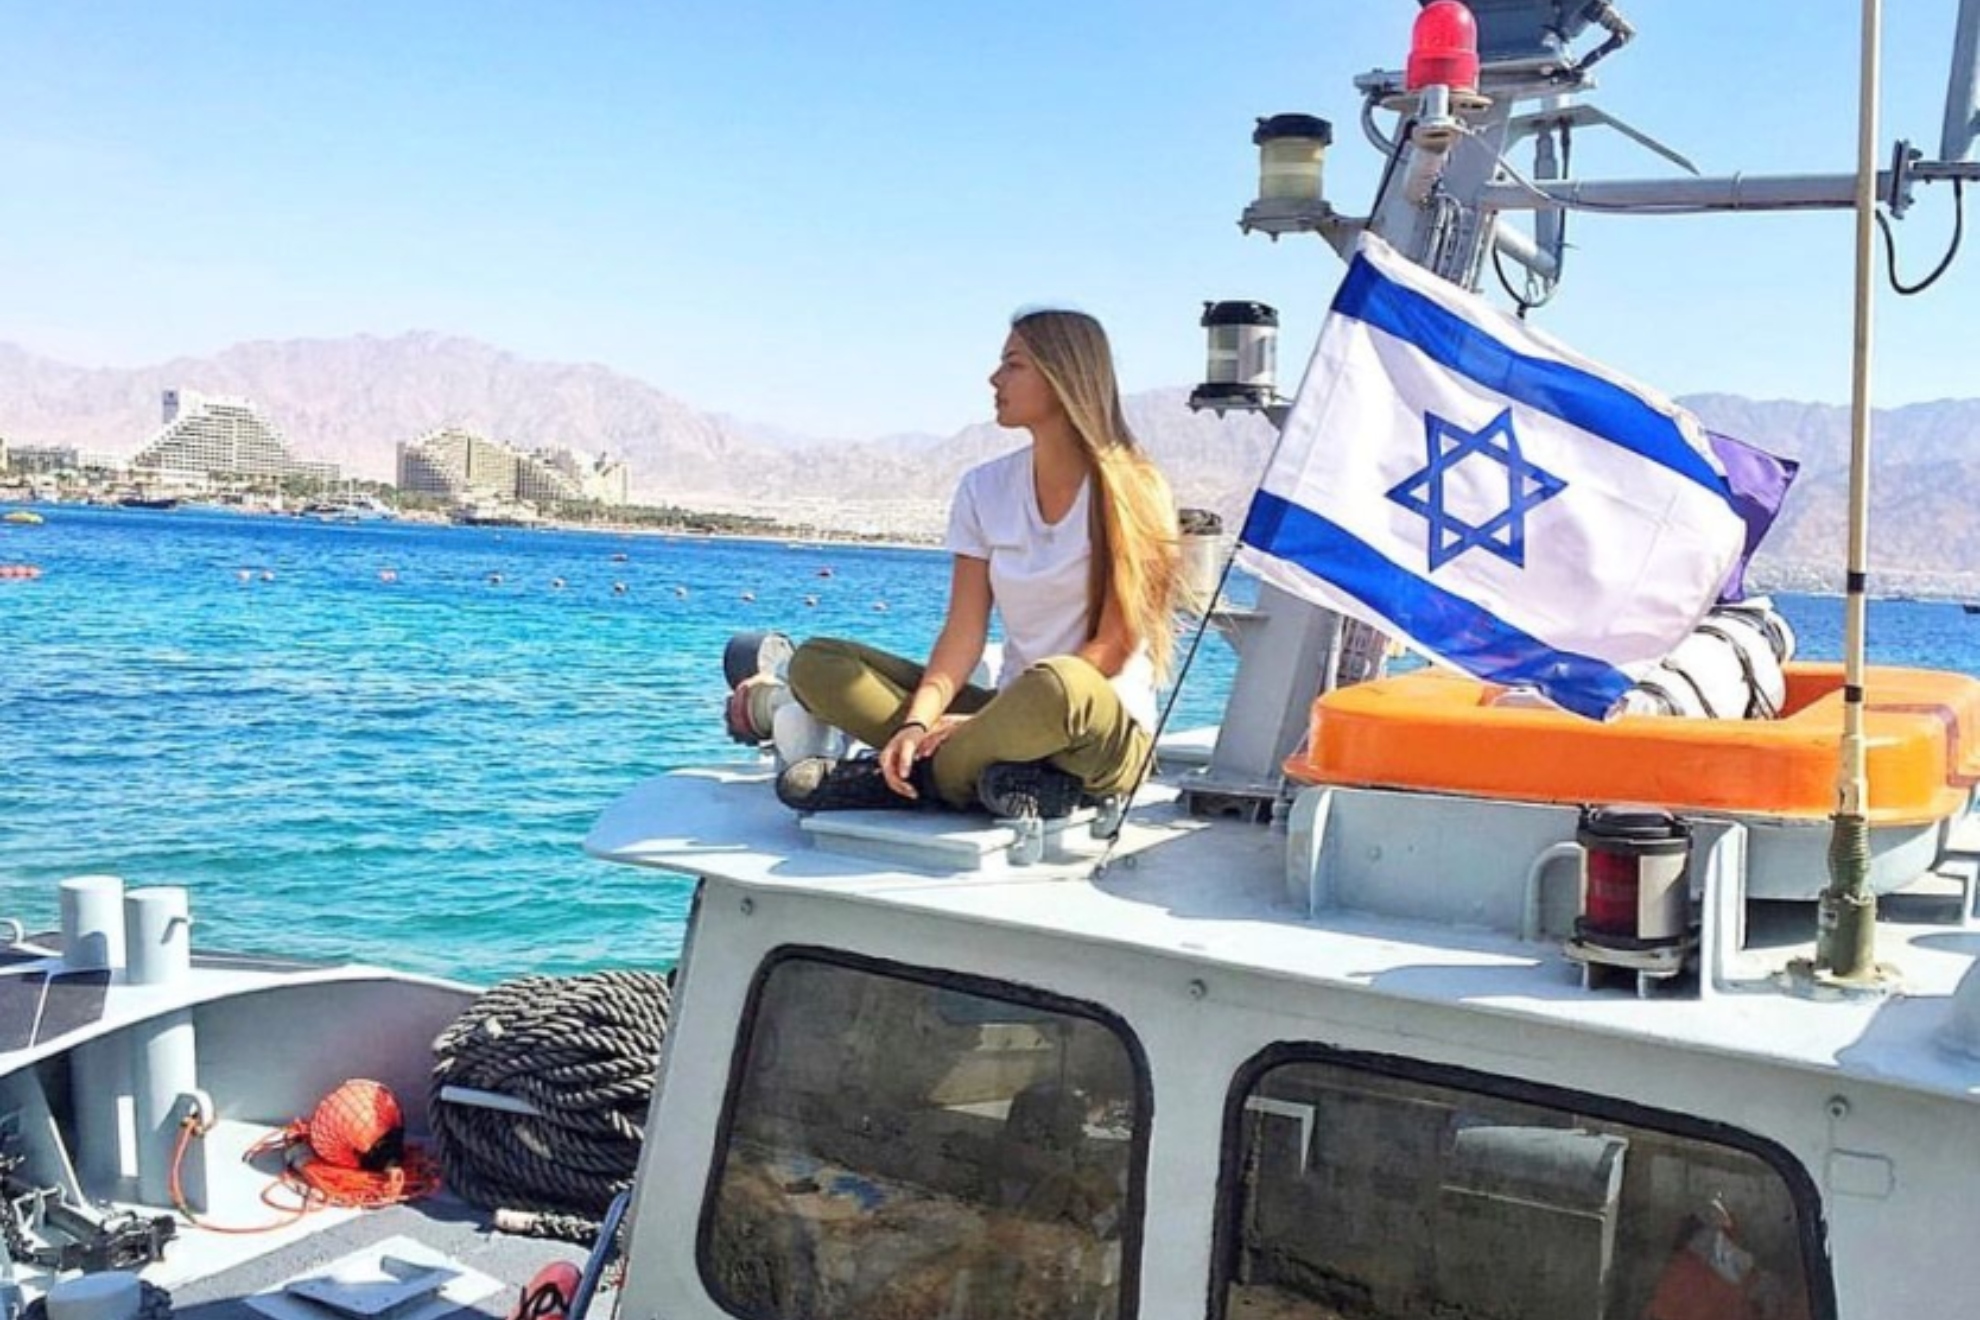 Mishel Gerzig, la esposa de Courtois que form parte del ejrcito israel: "Apoyar a Hams es apoyar la inhumanidad"